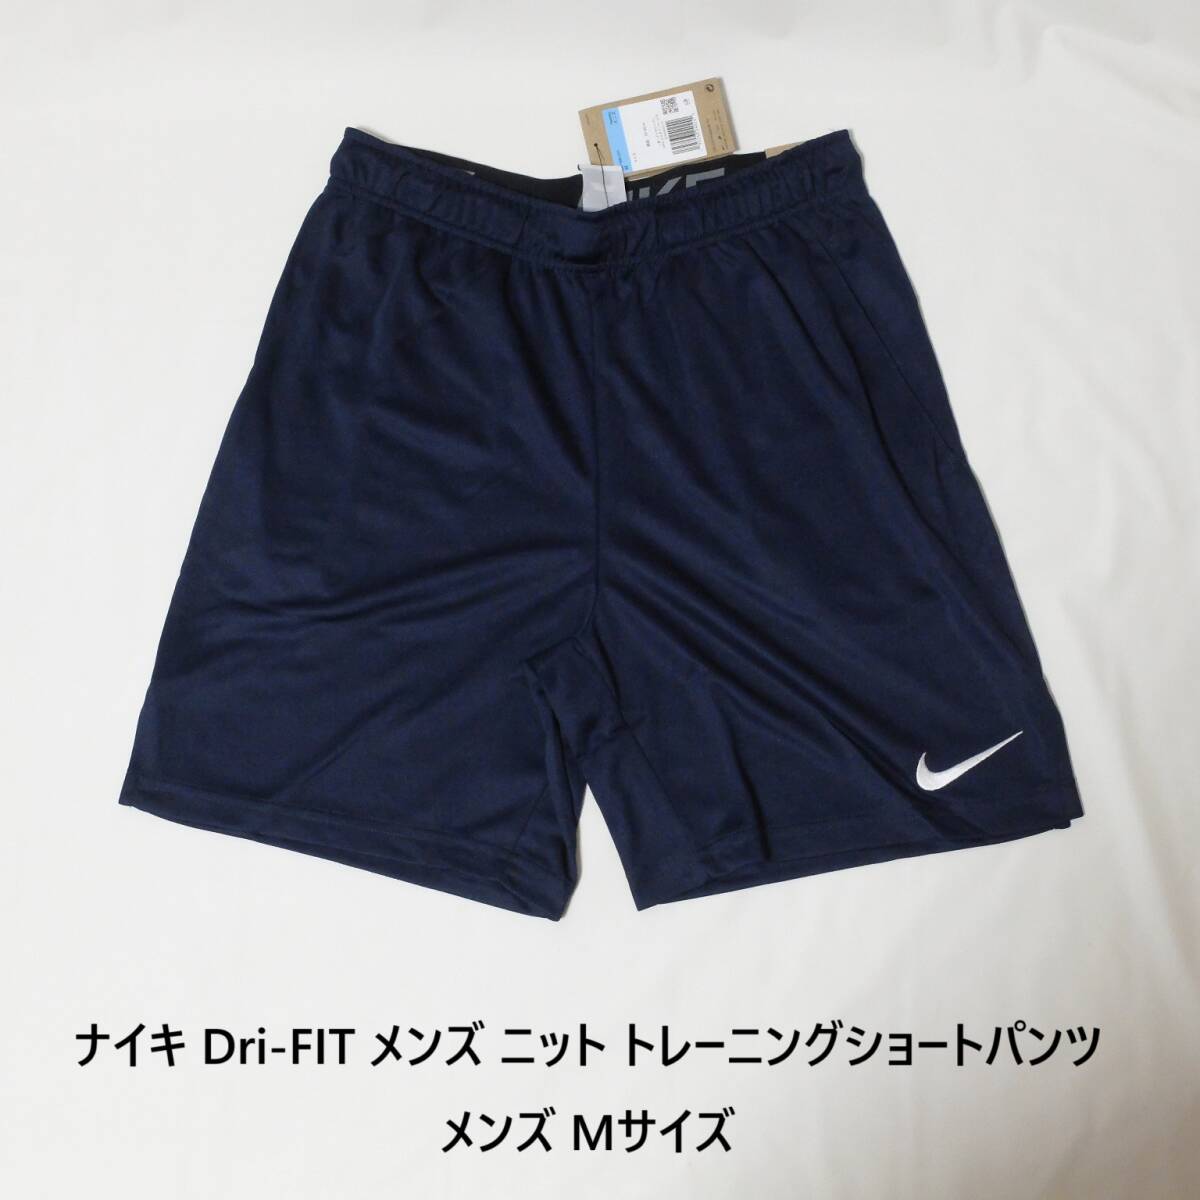 [新品 送料込] メンズM ナイキ Dri-FIT メンズ ニット トレーニングショートパンツ DD1888 Nike Dri-FIT Men's Knit Training Shorts の画像1